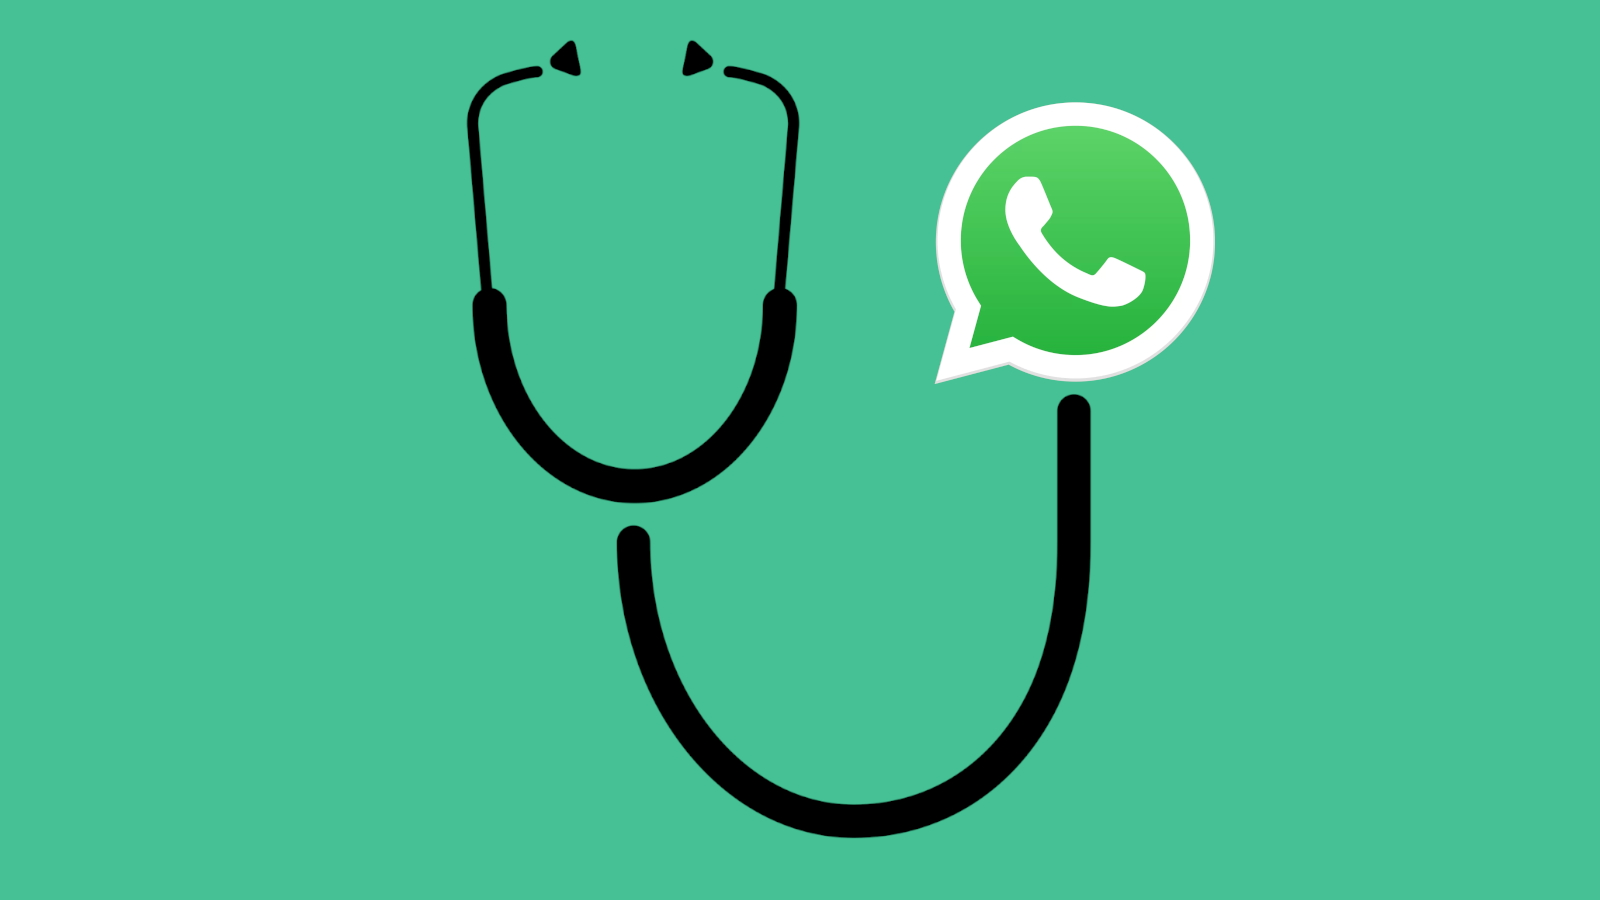 تبدأ وزارة الصحة في استخدام WhatsApp للرد على أسئلة حول فيروس التاجي (COVID-19) 77